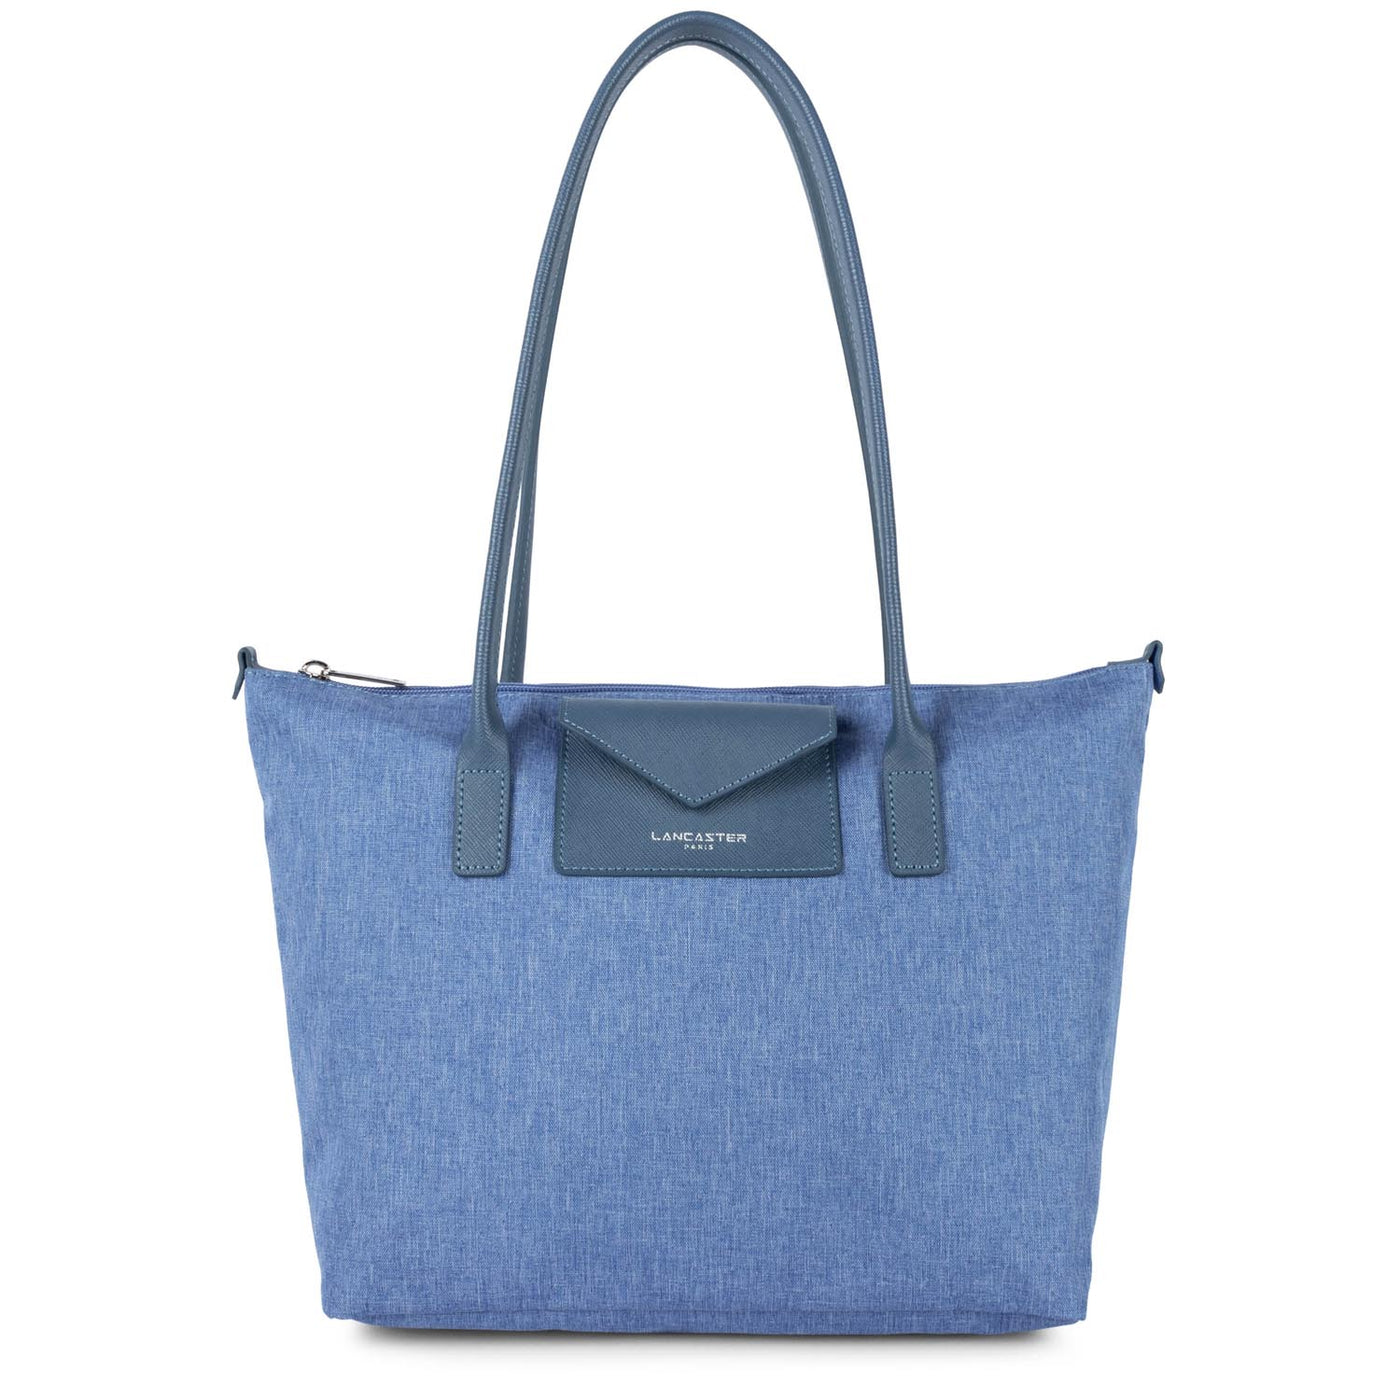 m tote bag - smart kba #couleur_bleu-stone